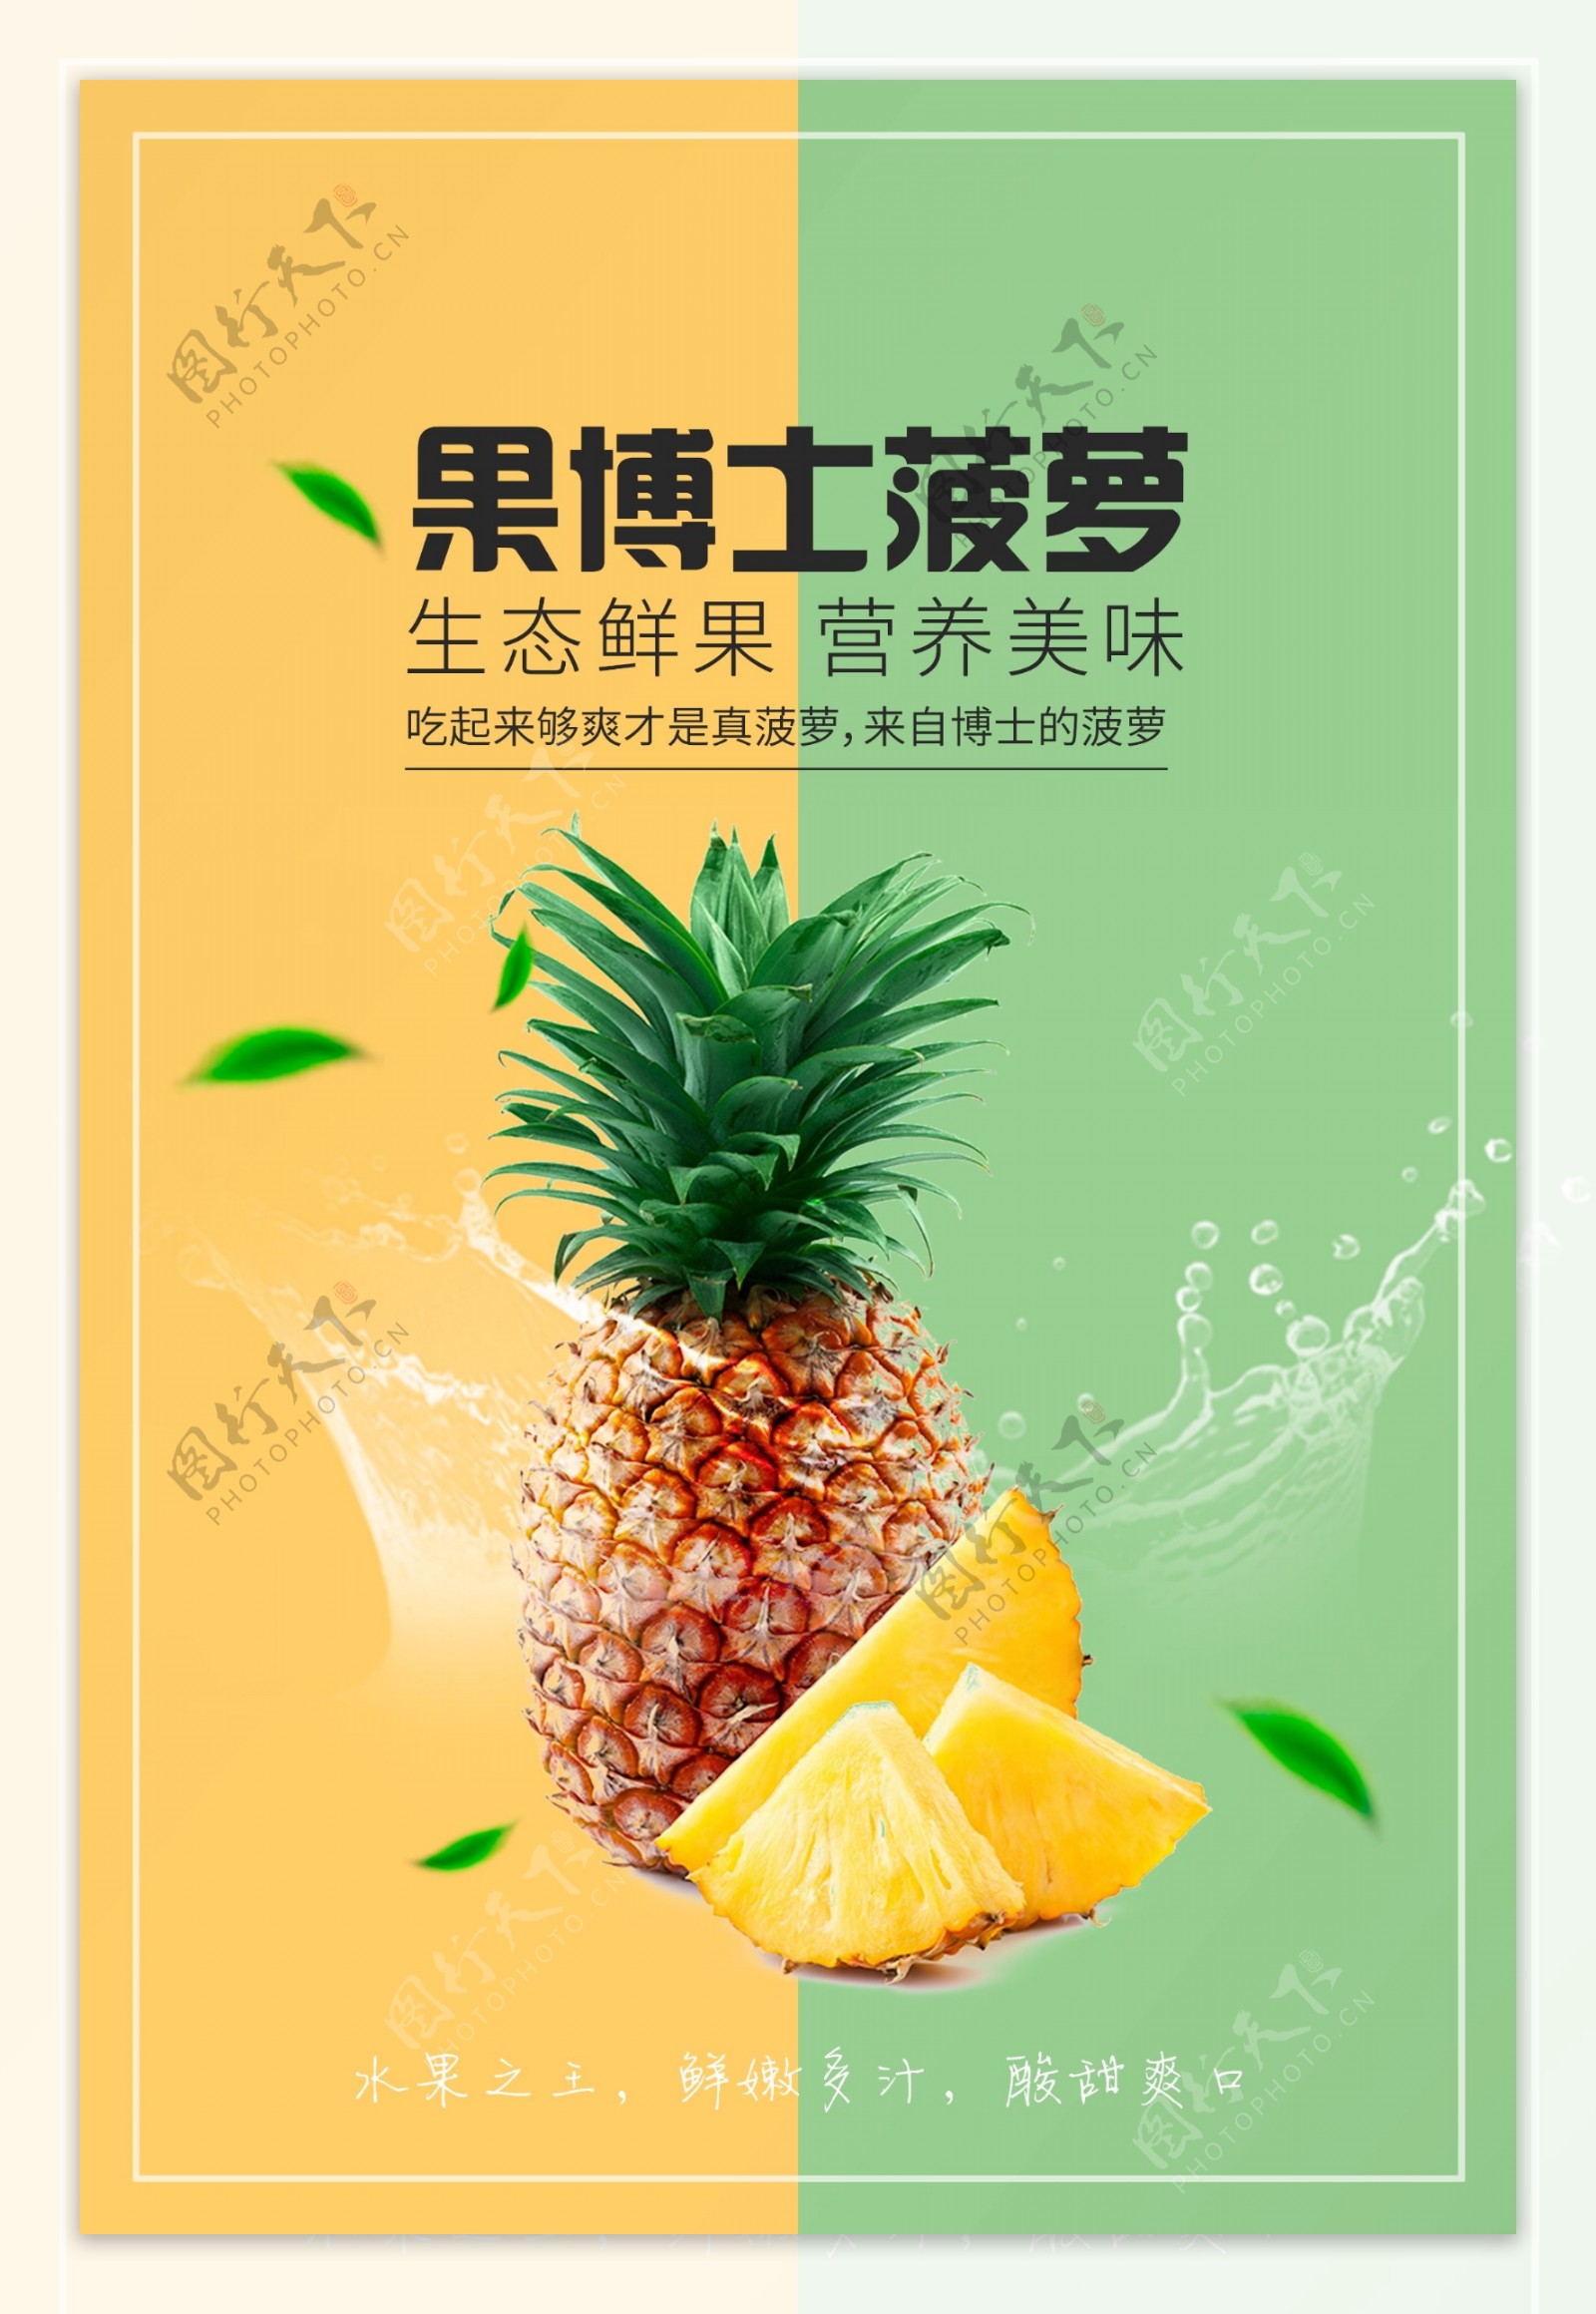 菠萝水果活动宣传海报素材